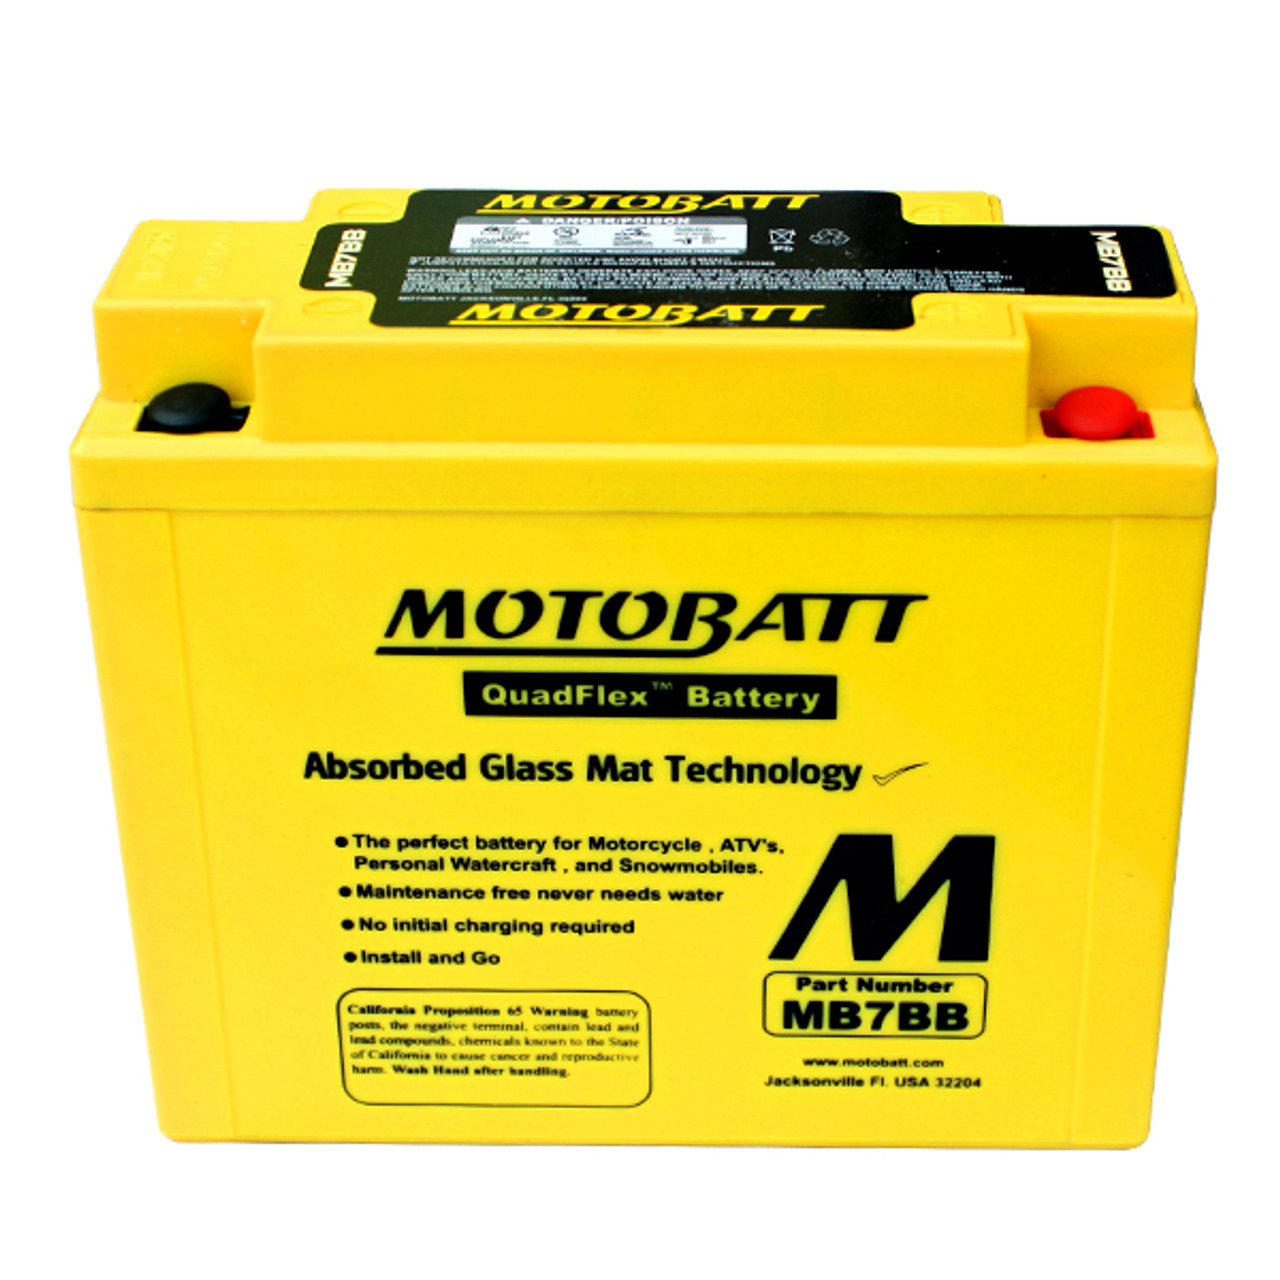 Motobatt MB7BB Battery - AGM Sealed for Motorcycle - Powersport